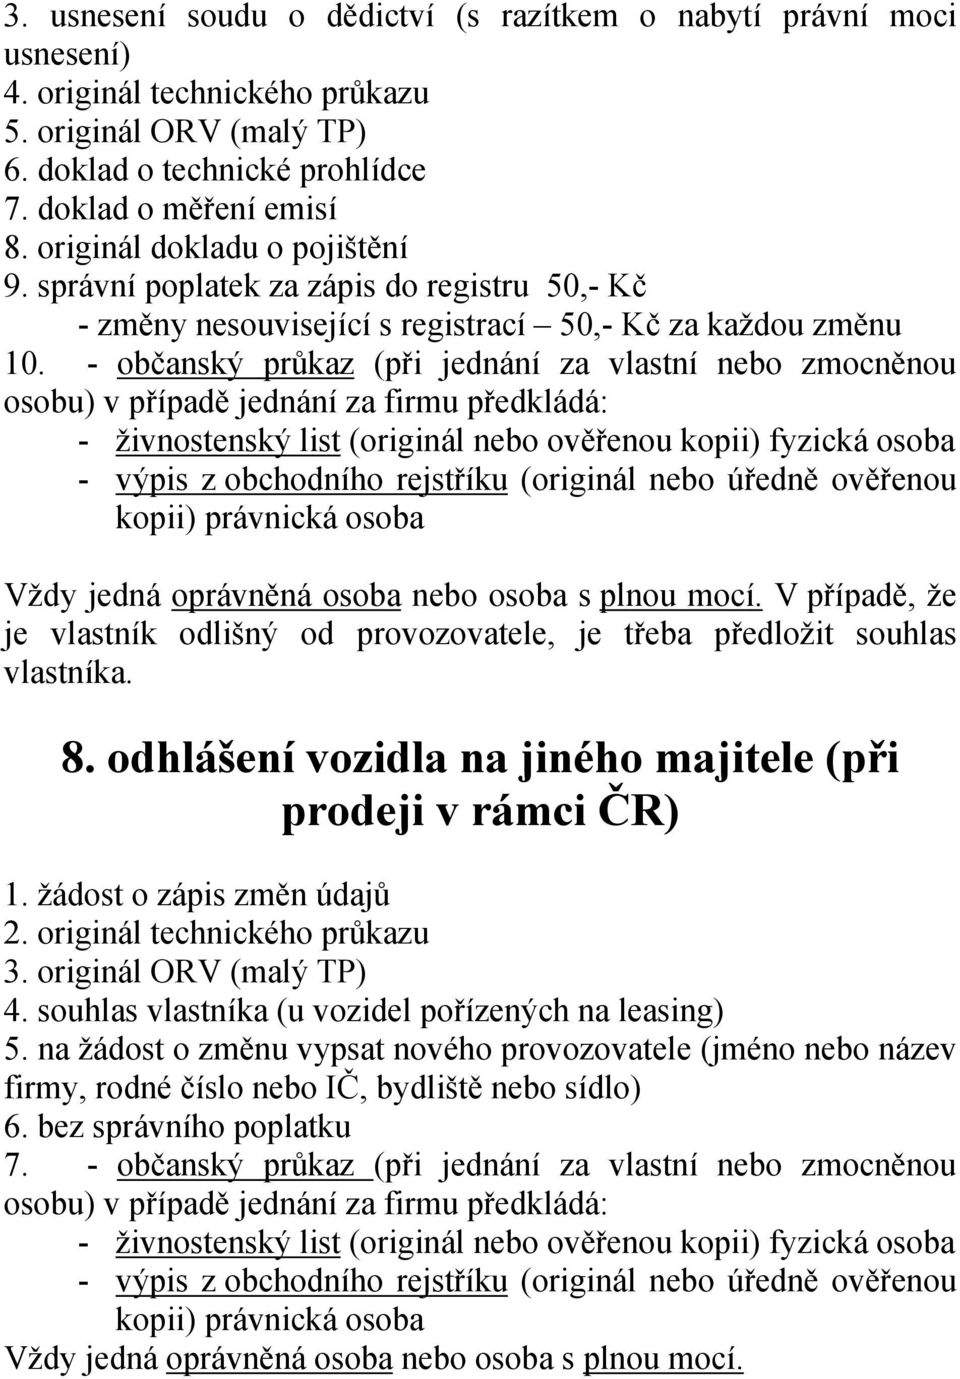 - občanský průkaz (při jednání za vlastní nebo zmocněnou 8. odhlášení vozidla na jiného majitele (při prodeji v rámci ČR) 4.